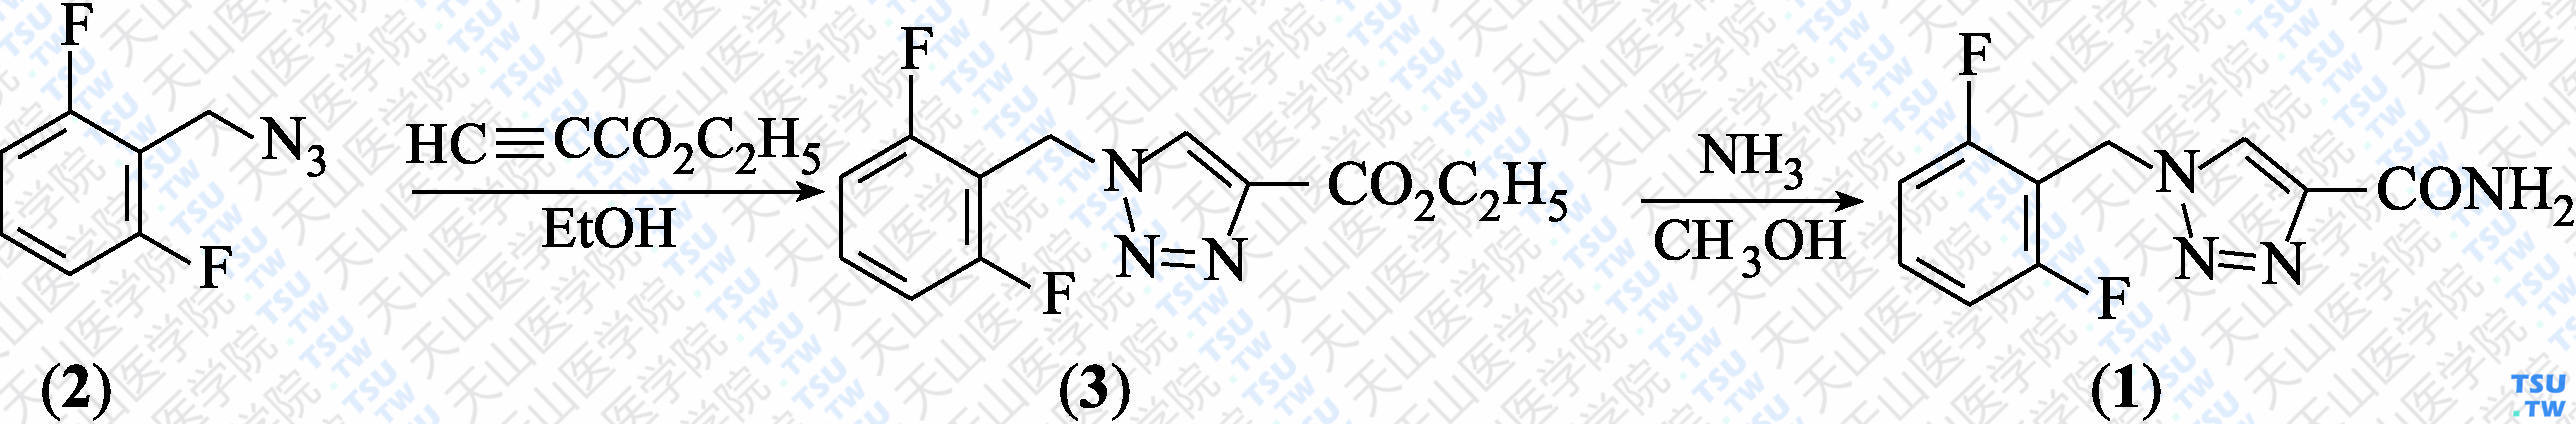 卢非酰胺（分子式：C<sub>10</sub>H<sub>8</sub>F<sub>2</sub>N<sub>4</sub>O）的合成方法路线及其结构式